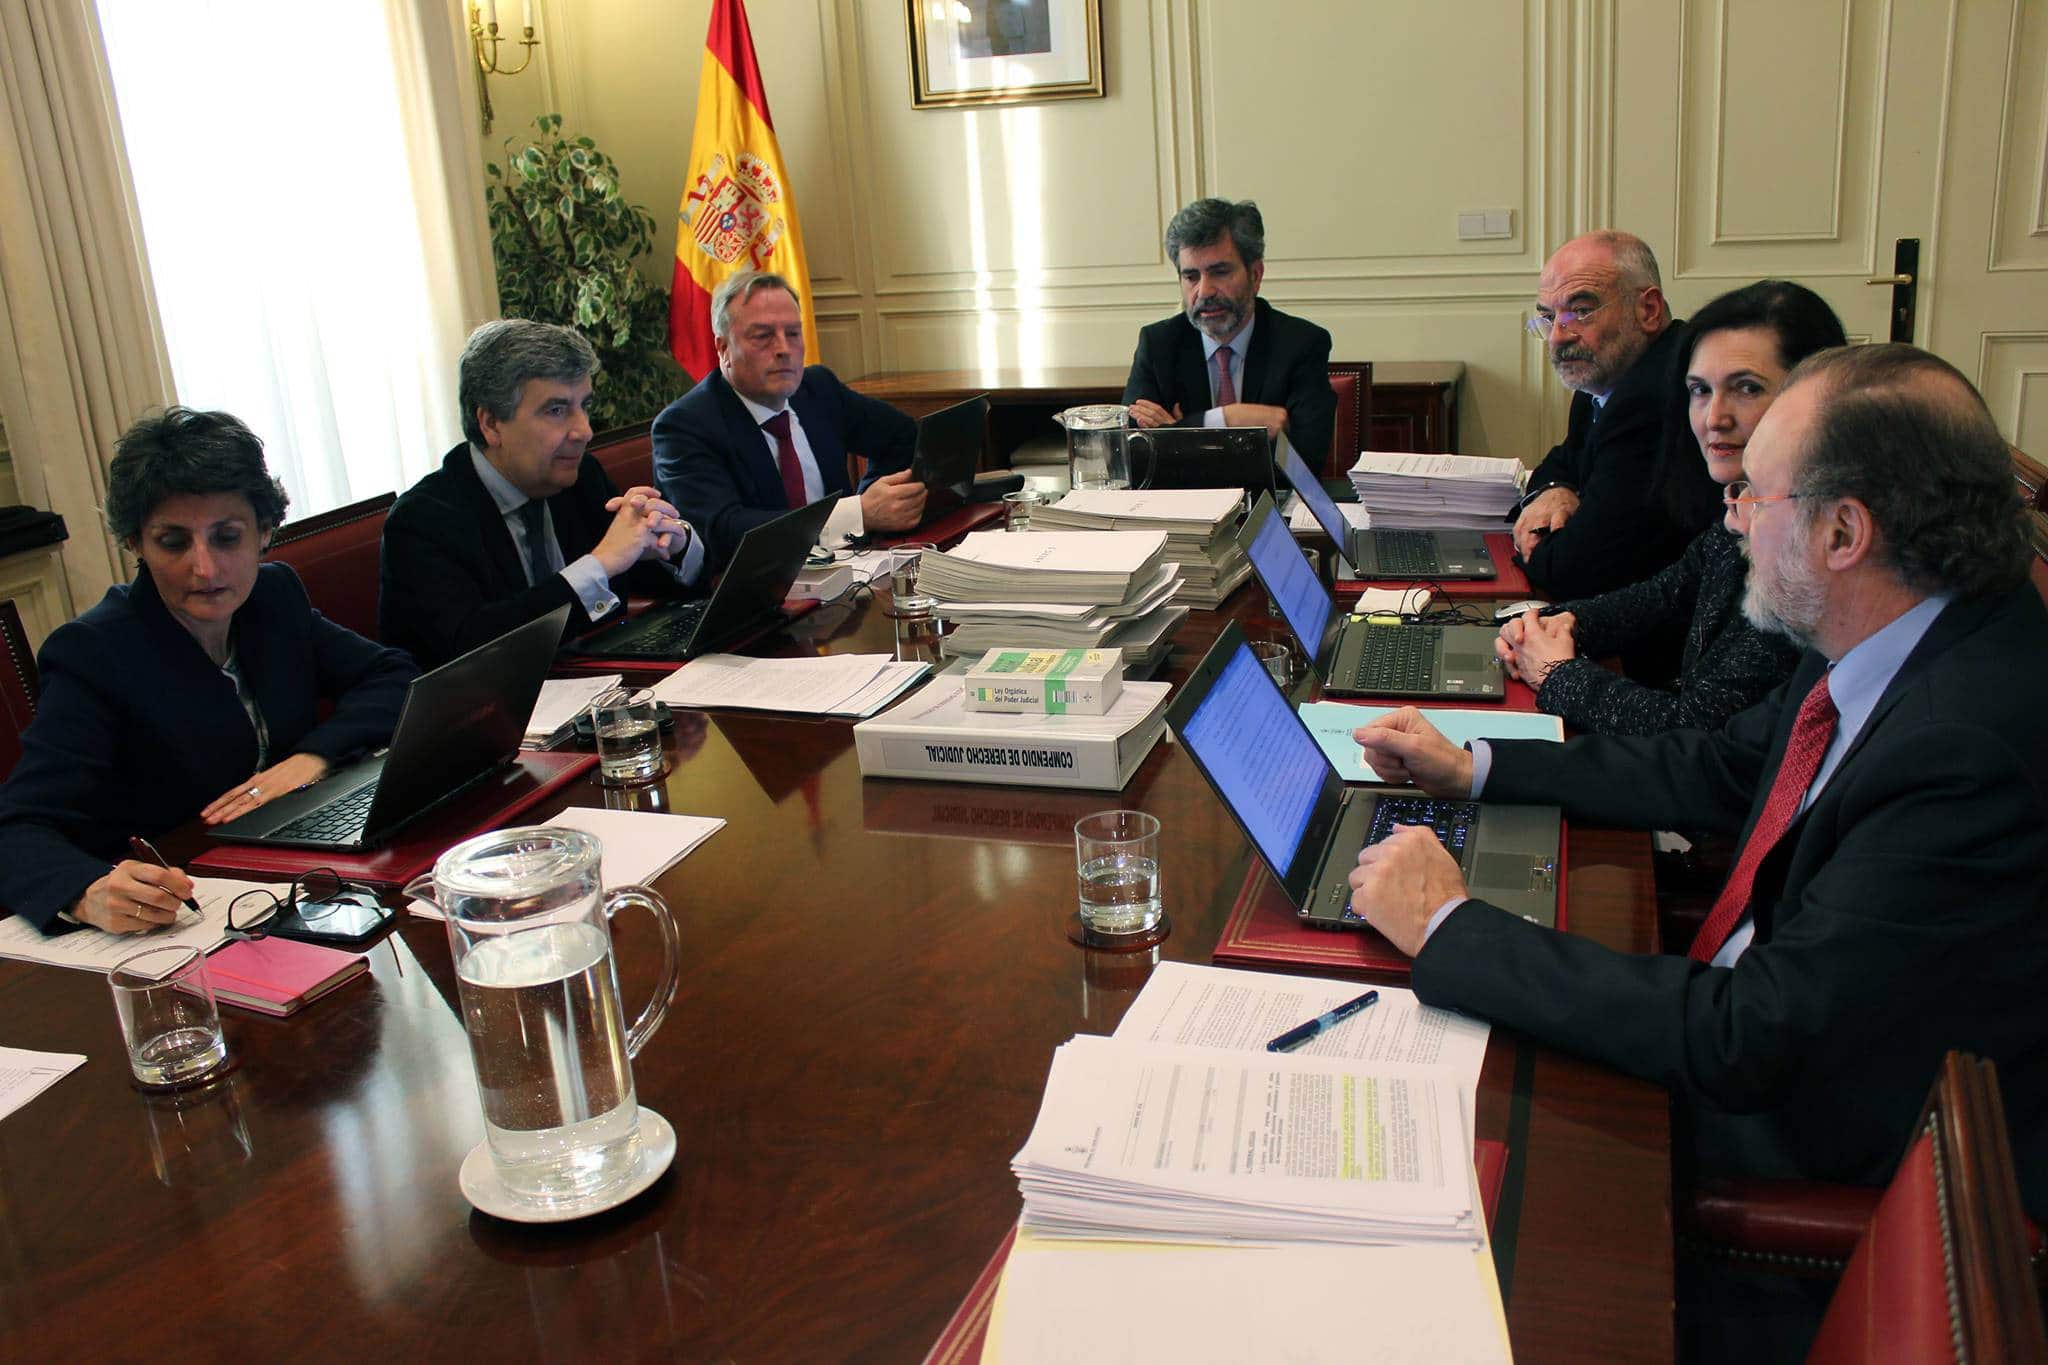 El CGPJ finalmente se corrige a sí mismo y suspende todas las actuaciones judiciales en España